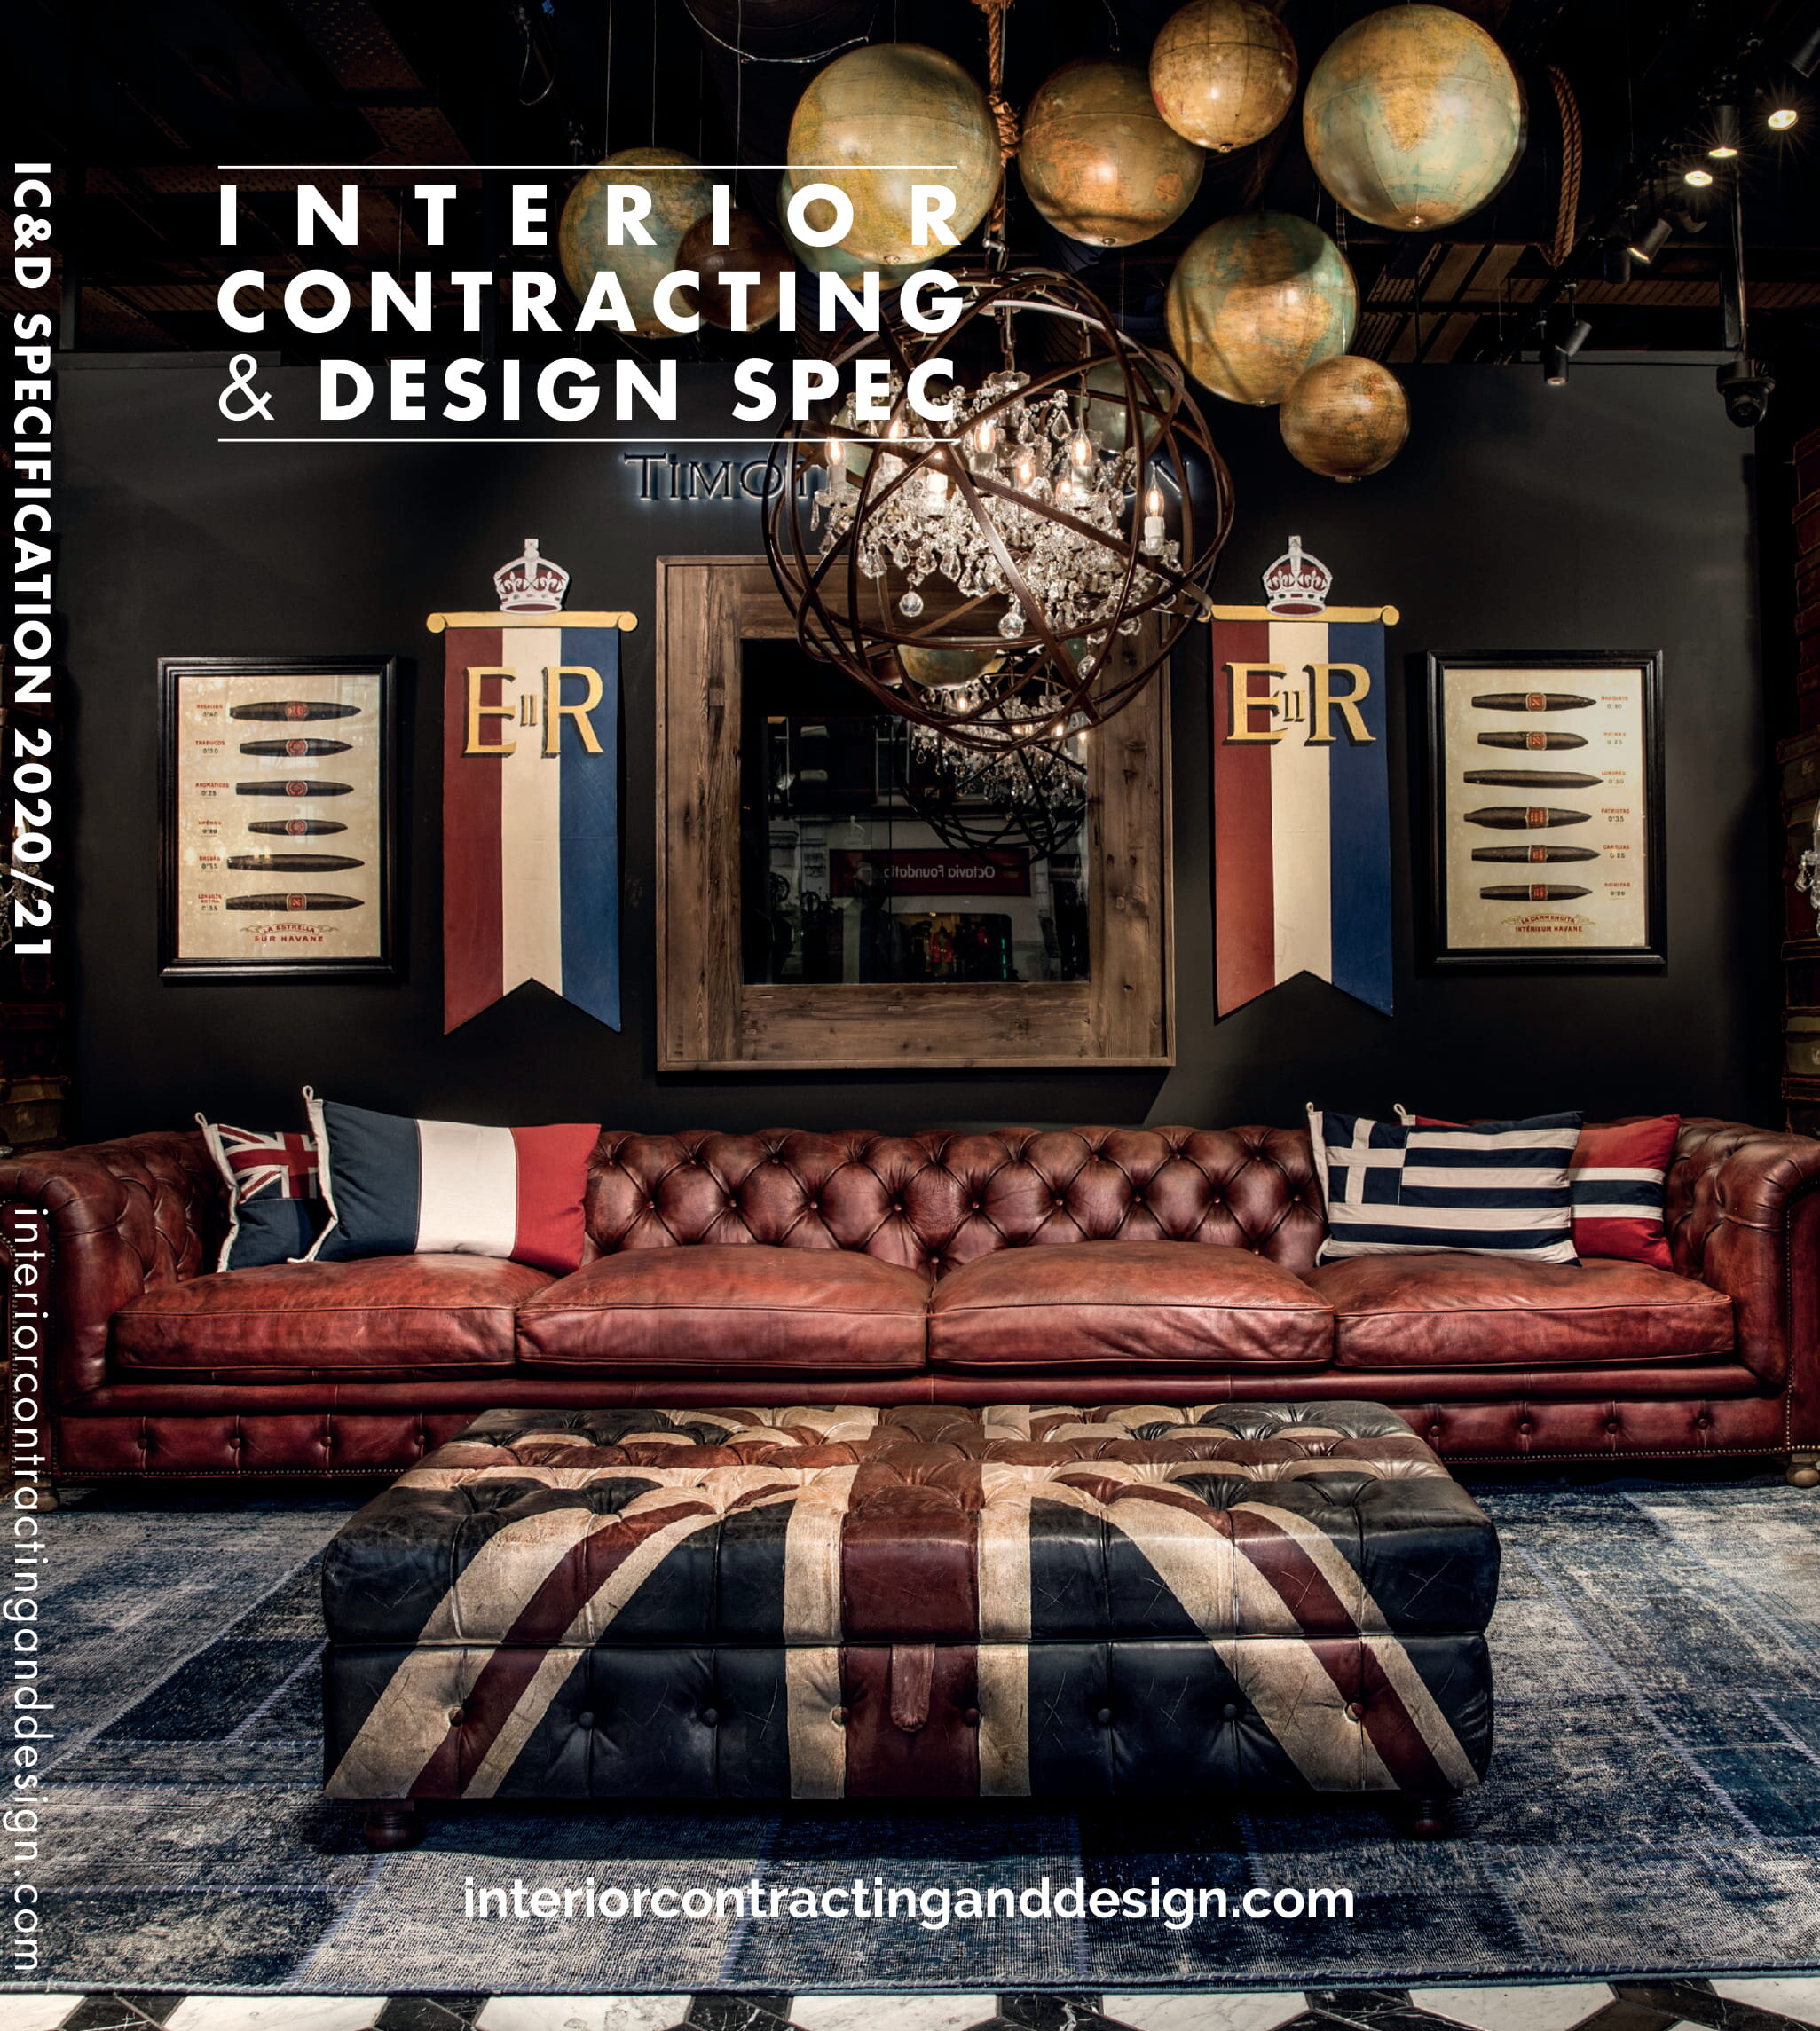 Interior Contracting & Design Spec 2020-21-1.jpg